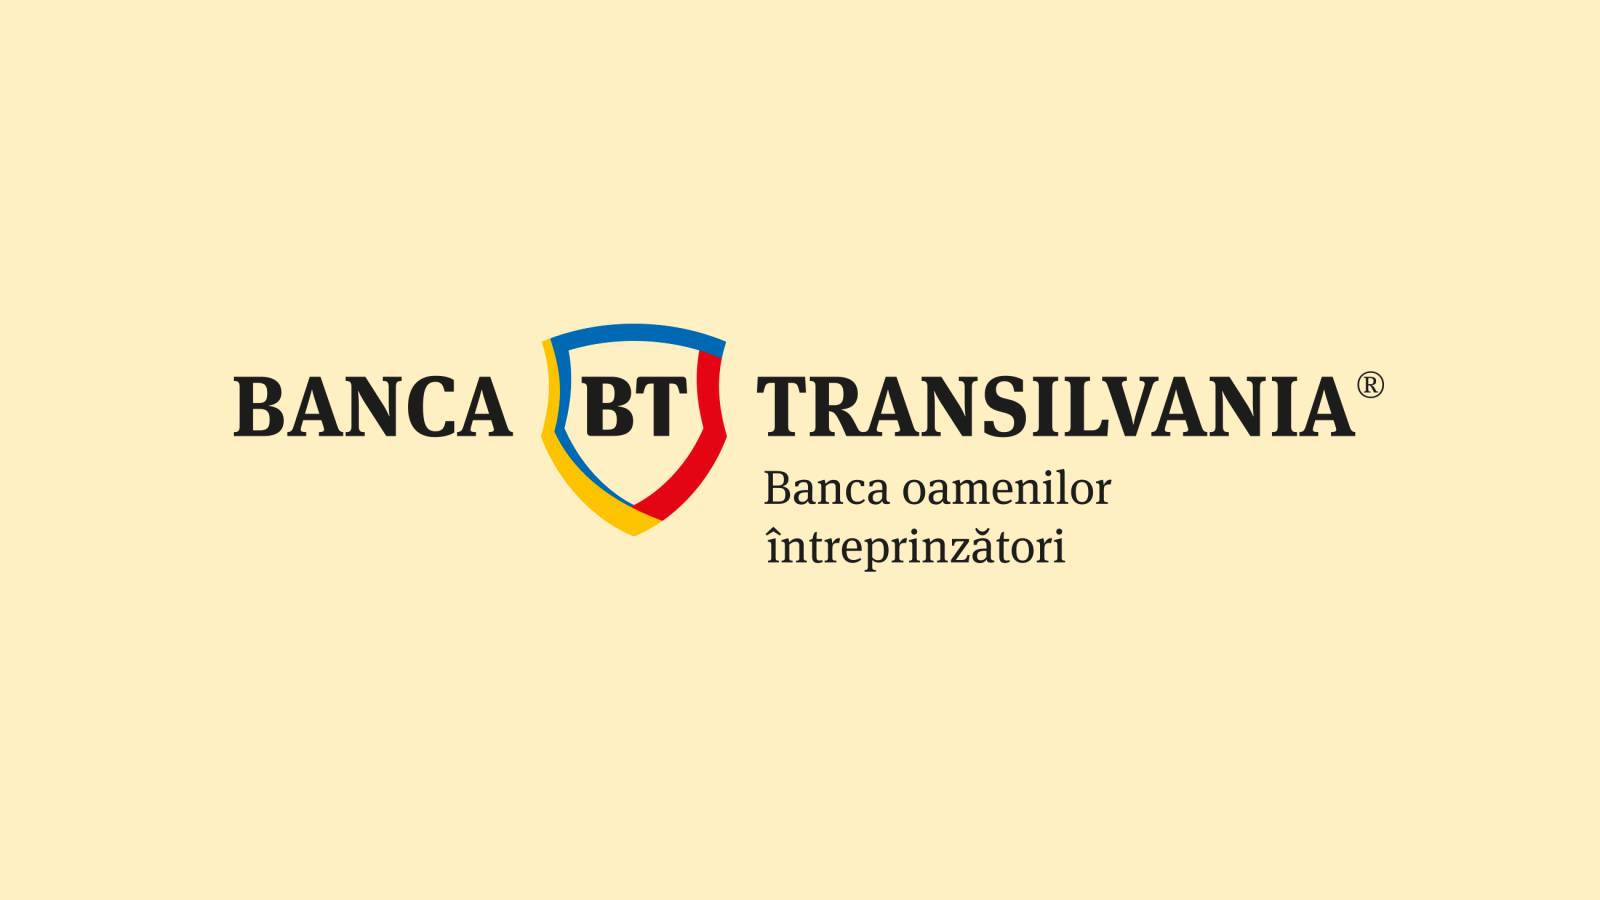 BANCA Transilvania oficjalnie wysyła dziś do klientów WAŻNE powiadomienie